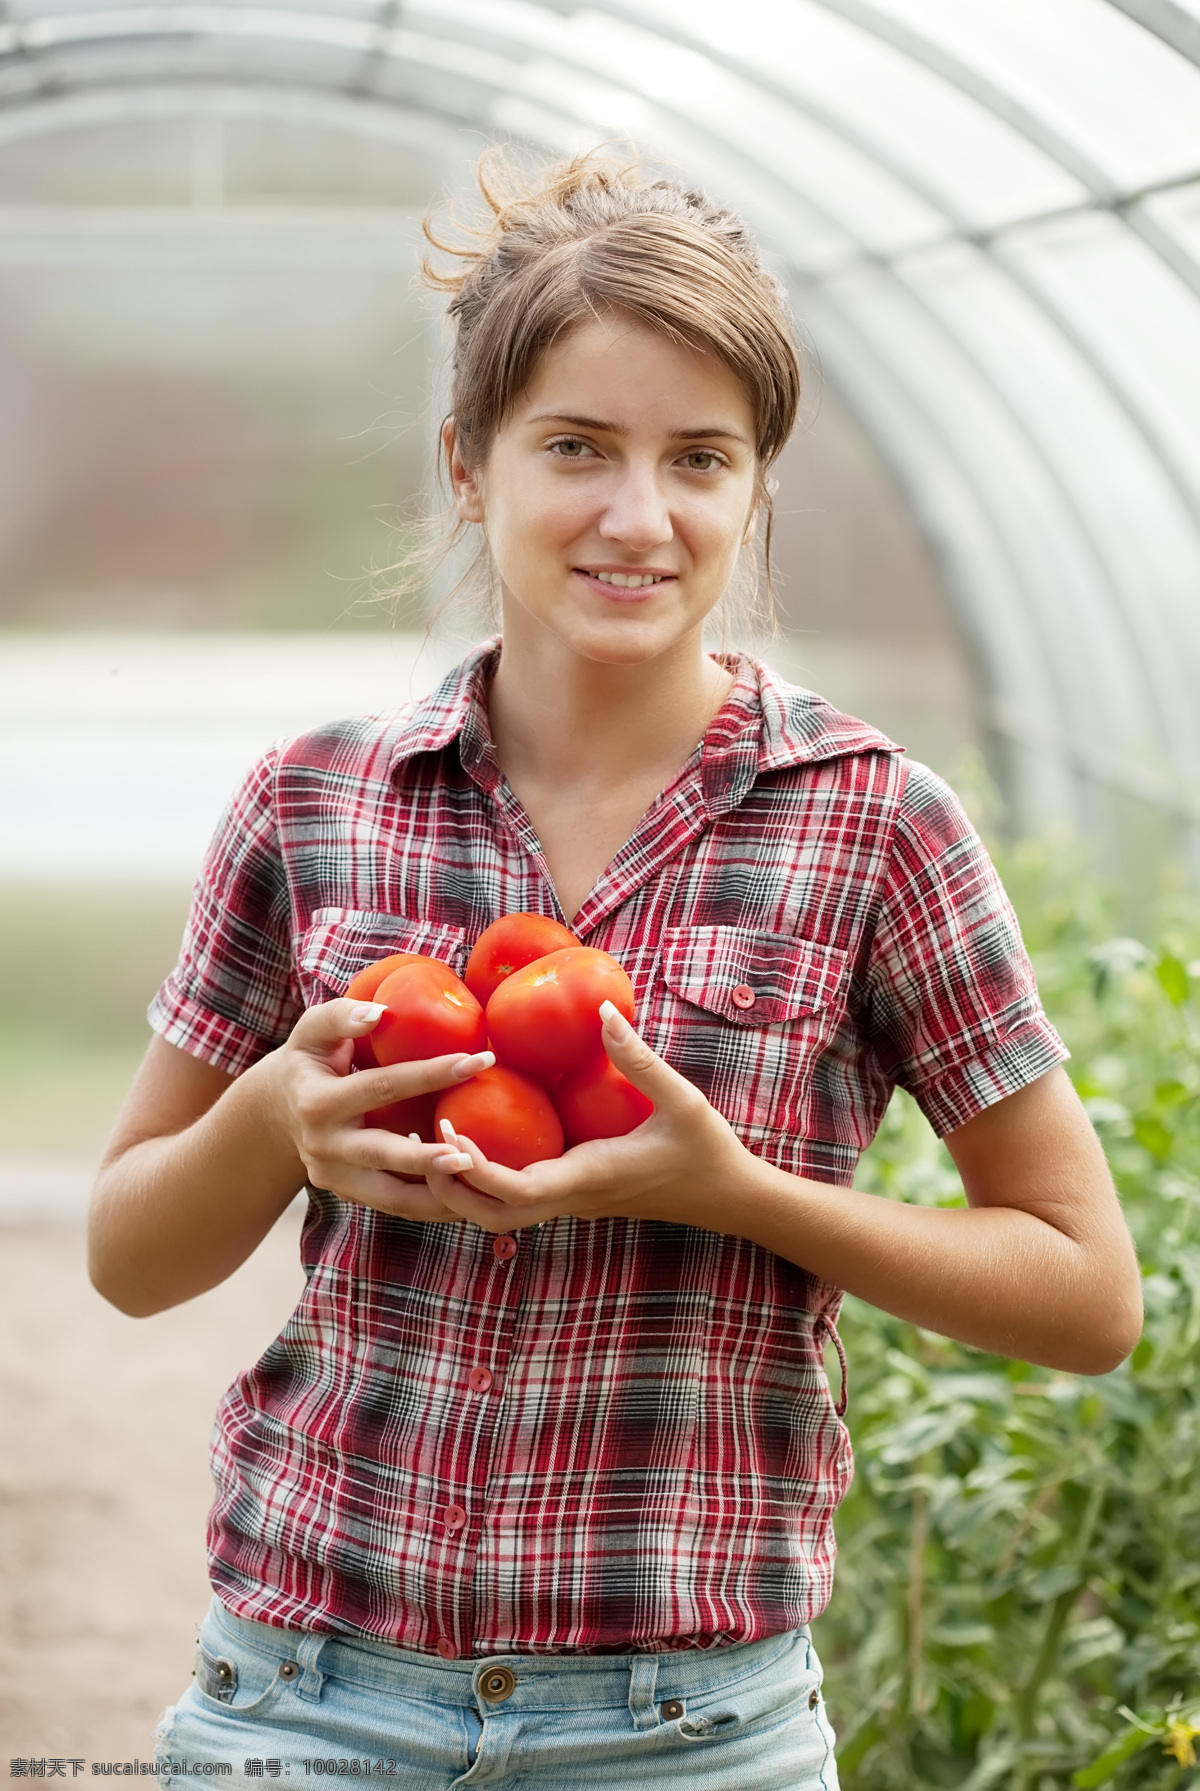 抱 西红柿 外国 美女图片 抱着西红柿 外国美女 水果 蔬菜 人物 微笑 农业生产 现代科技